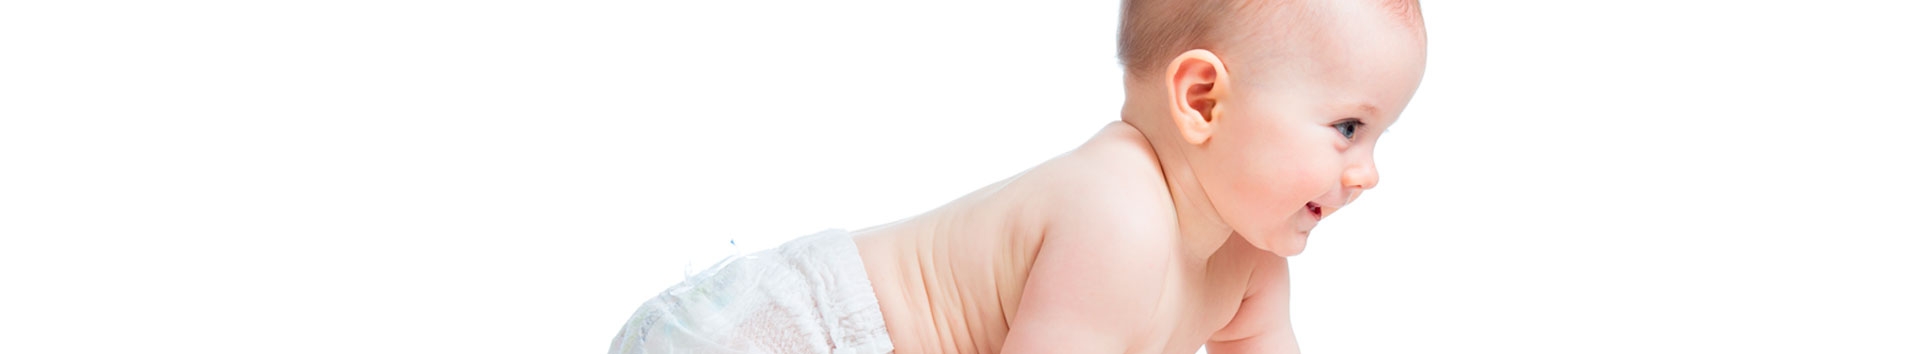 Como surgem as cólicas nos bebês?